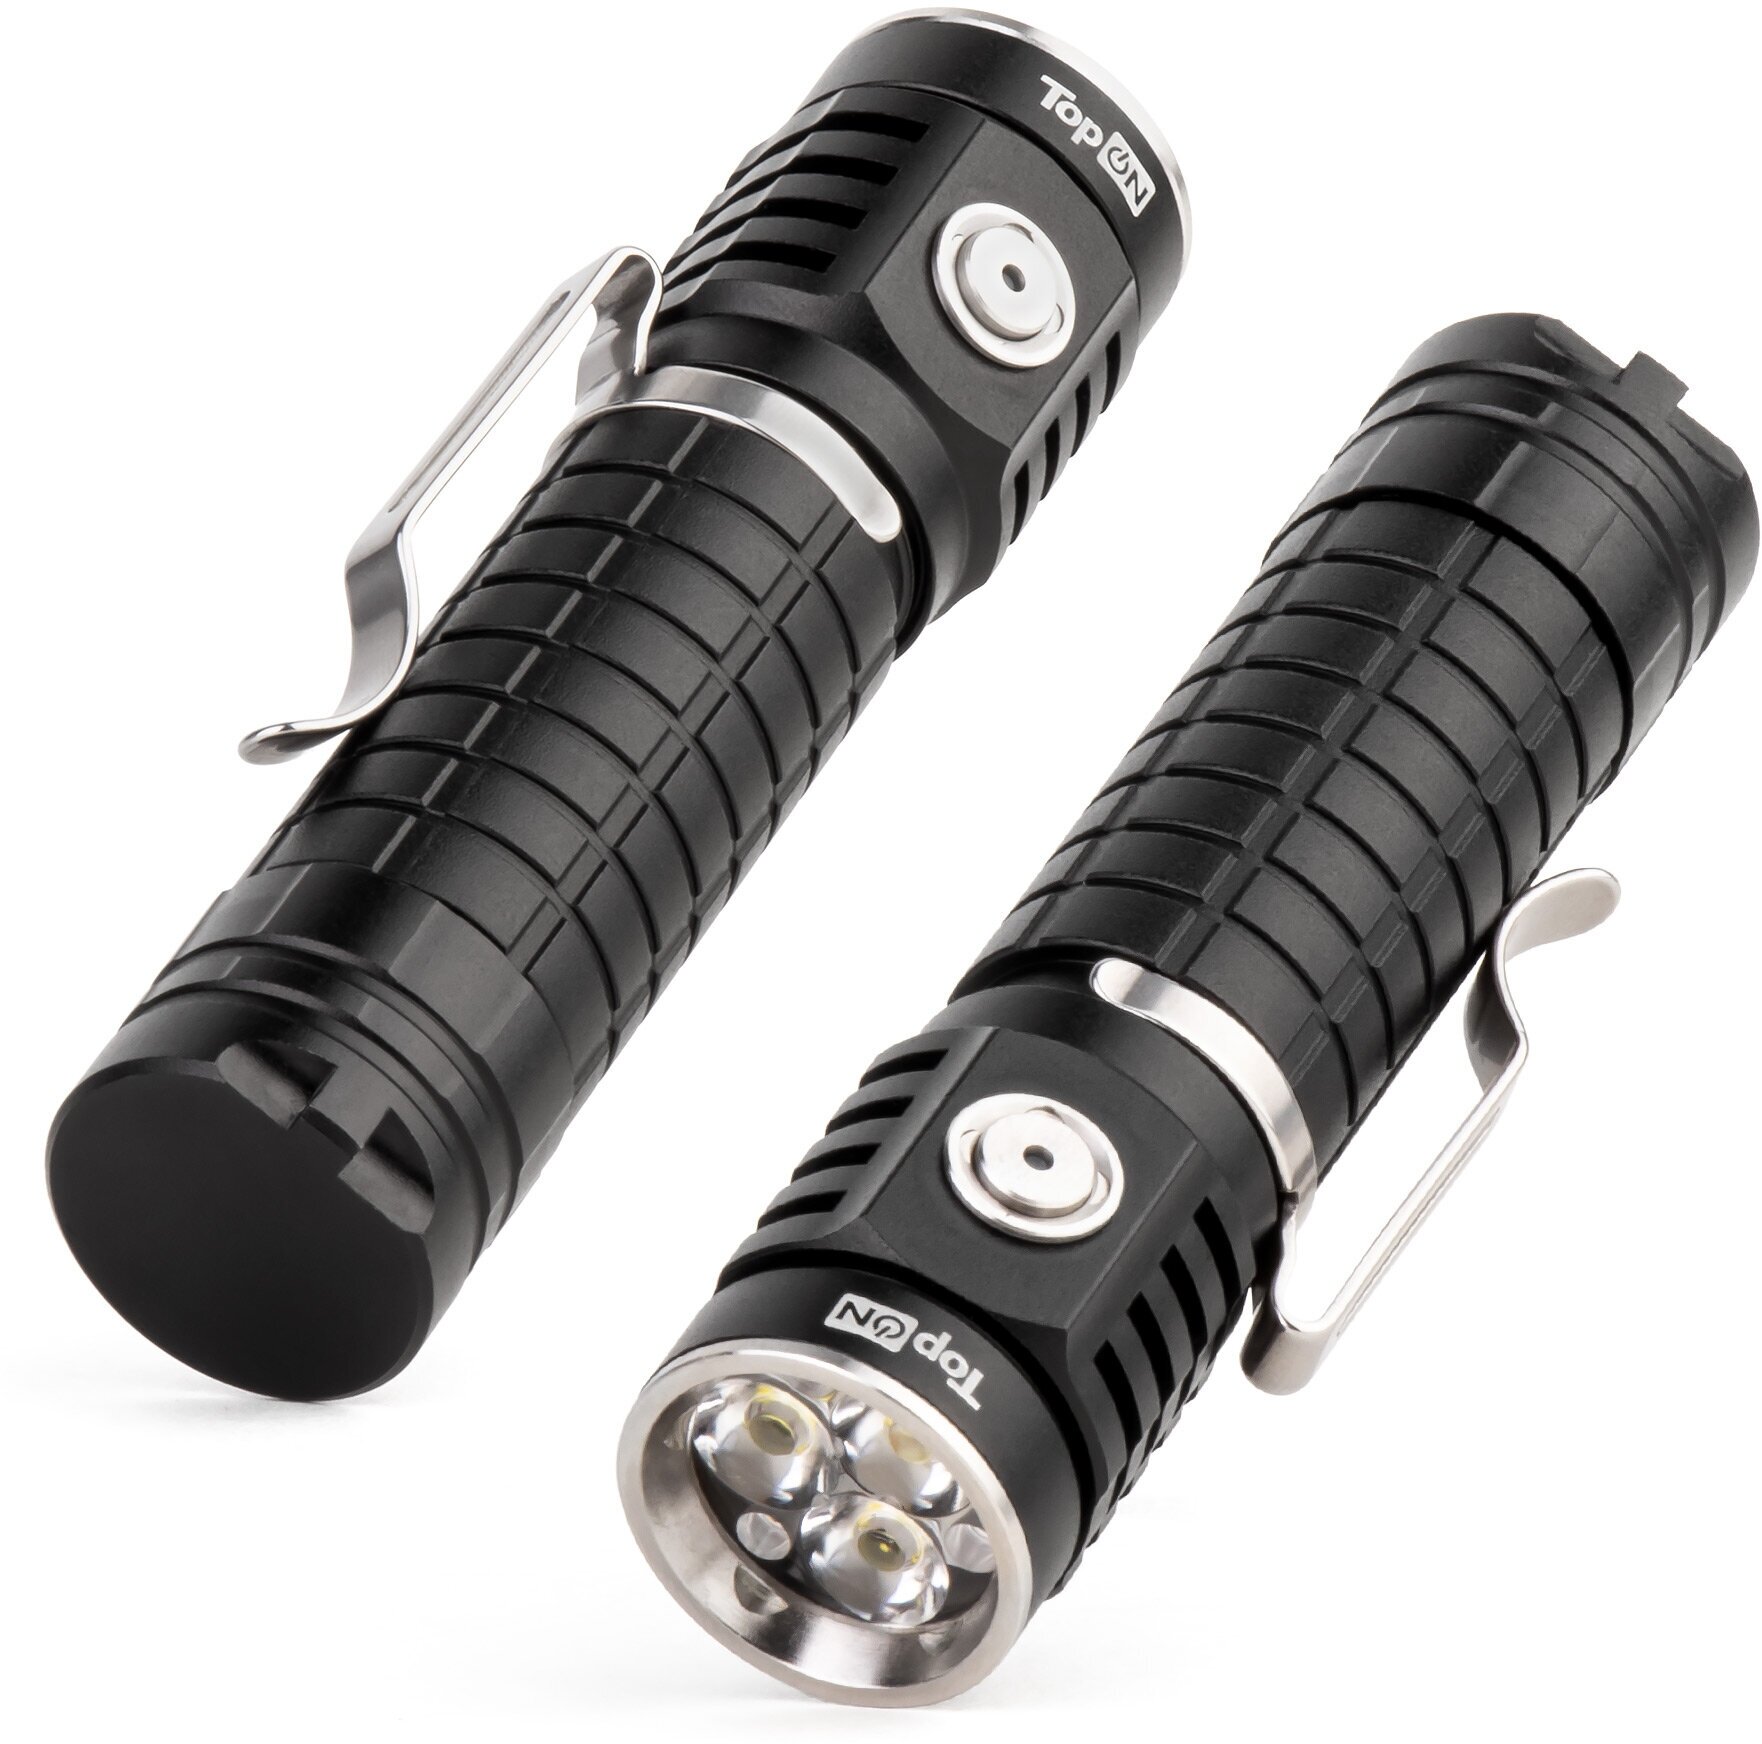 Ручной аккумуляторный фонарь TopON TOP-MX1TH CREE XP-G3 LED 10 Вт 1000 лм 3.7 B 2.6 Ач 9.62 Втч, TIR линза, 4 режима яркости, магнит, клипса, IPX4